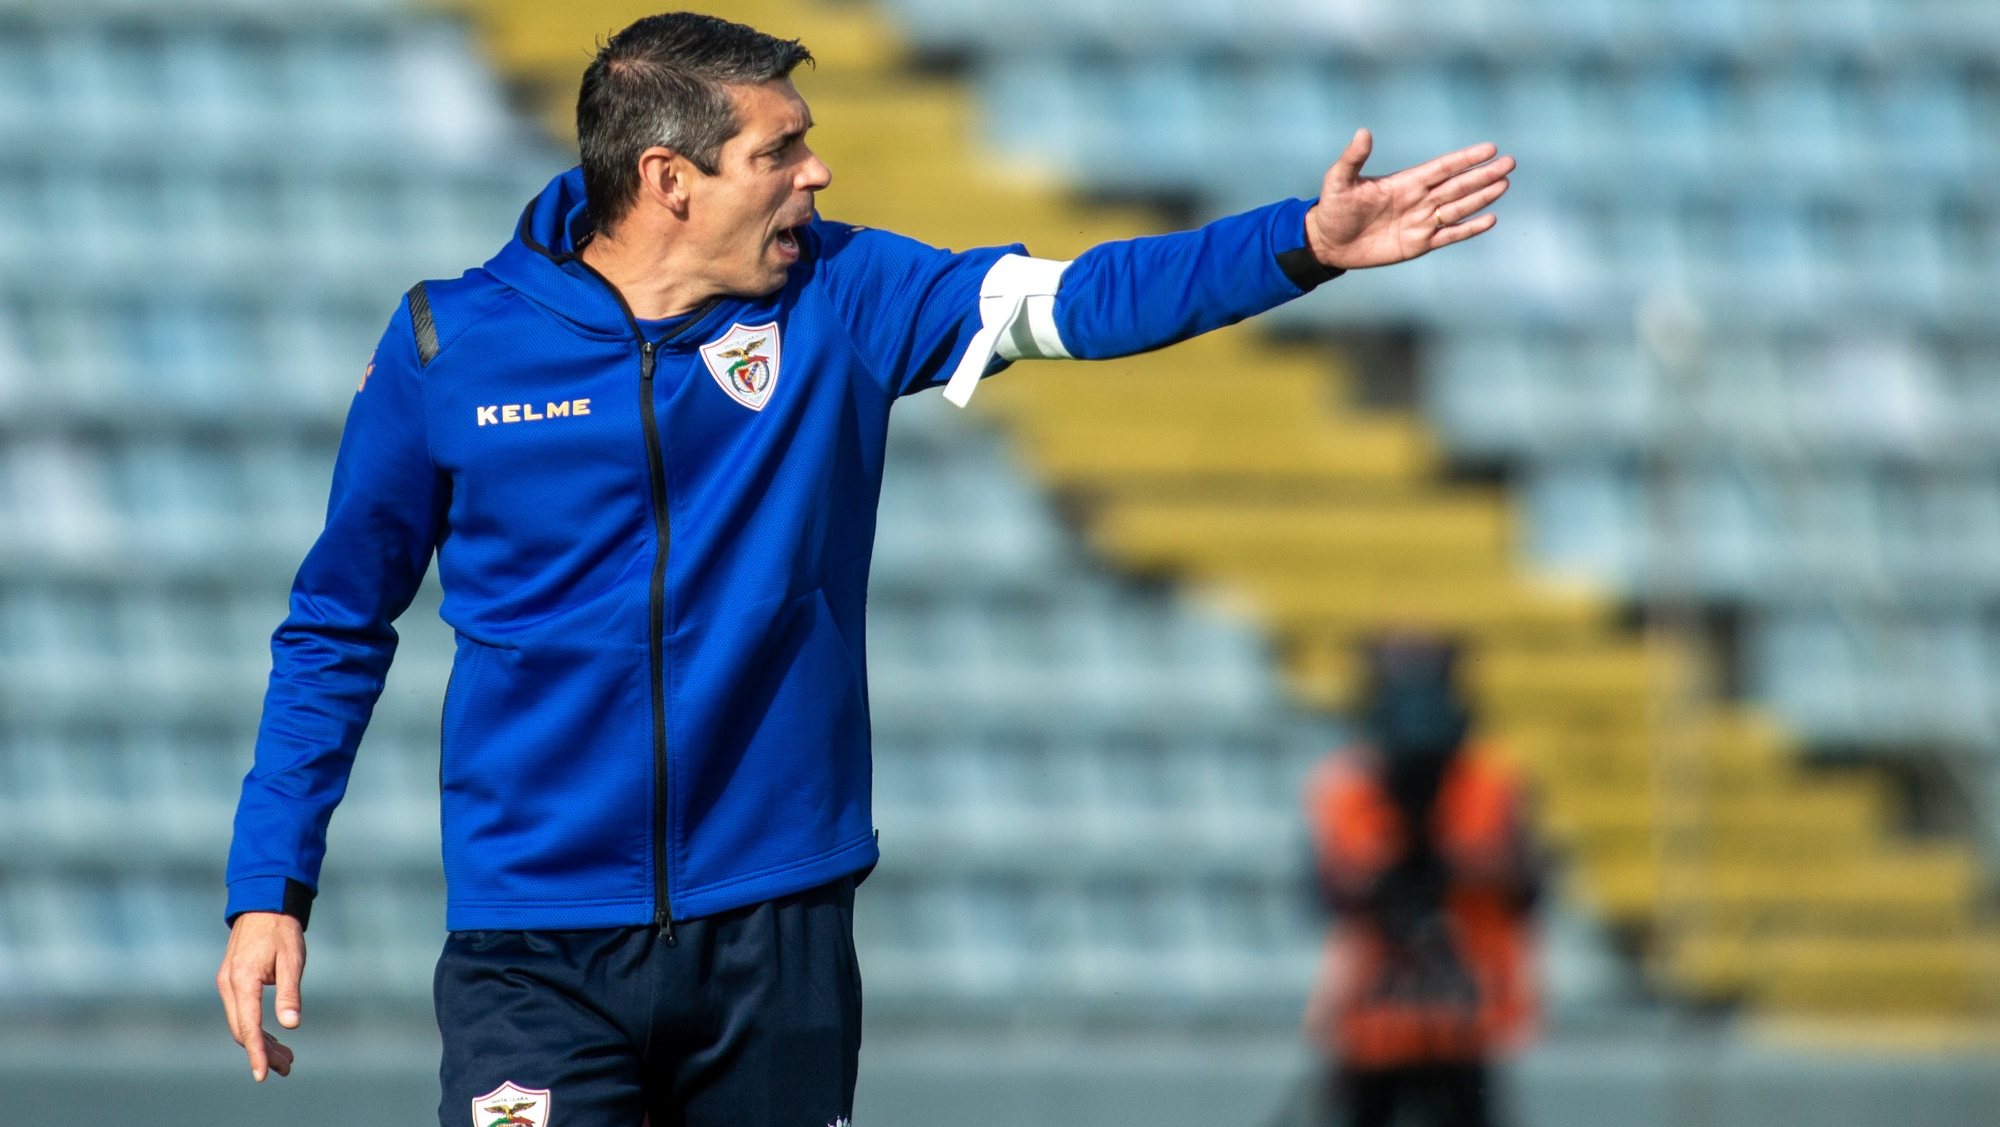 O treinador do Santa Clara, Nuno Campos, durante o jogo da Primeira Liga de futebol contra o Arouca, disputado no Estádio de São Miguel, Ponta Delgada, 05 de dezembro de 2021. EDUARDO COSTA/LUSA